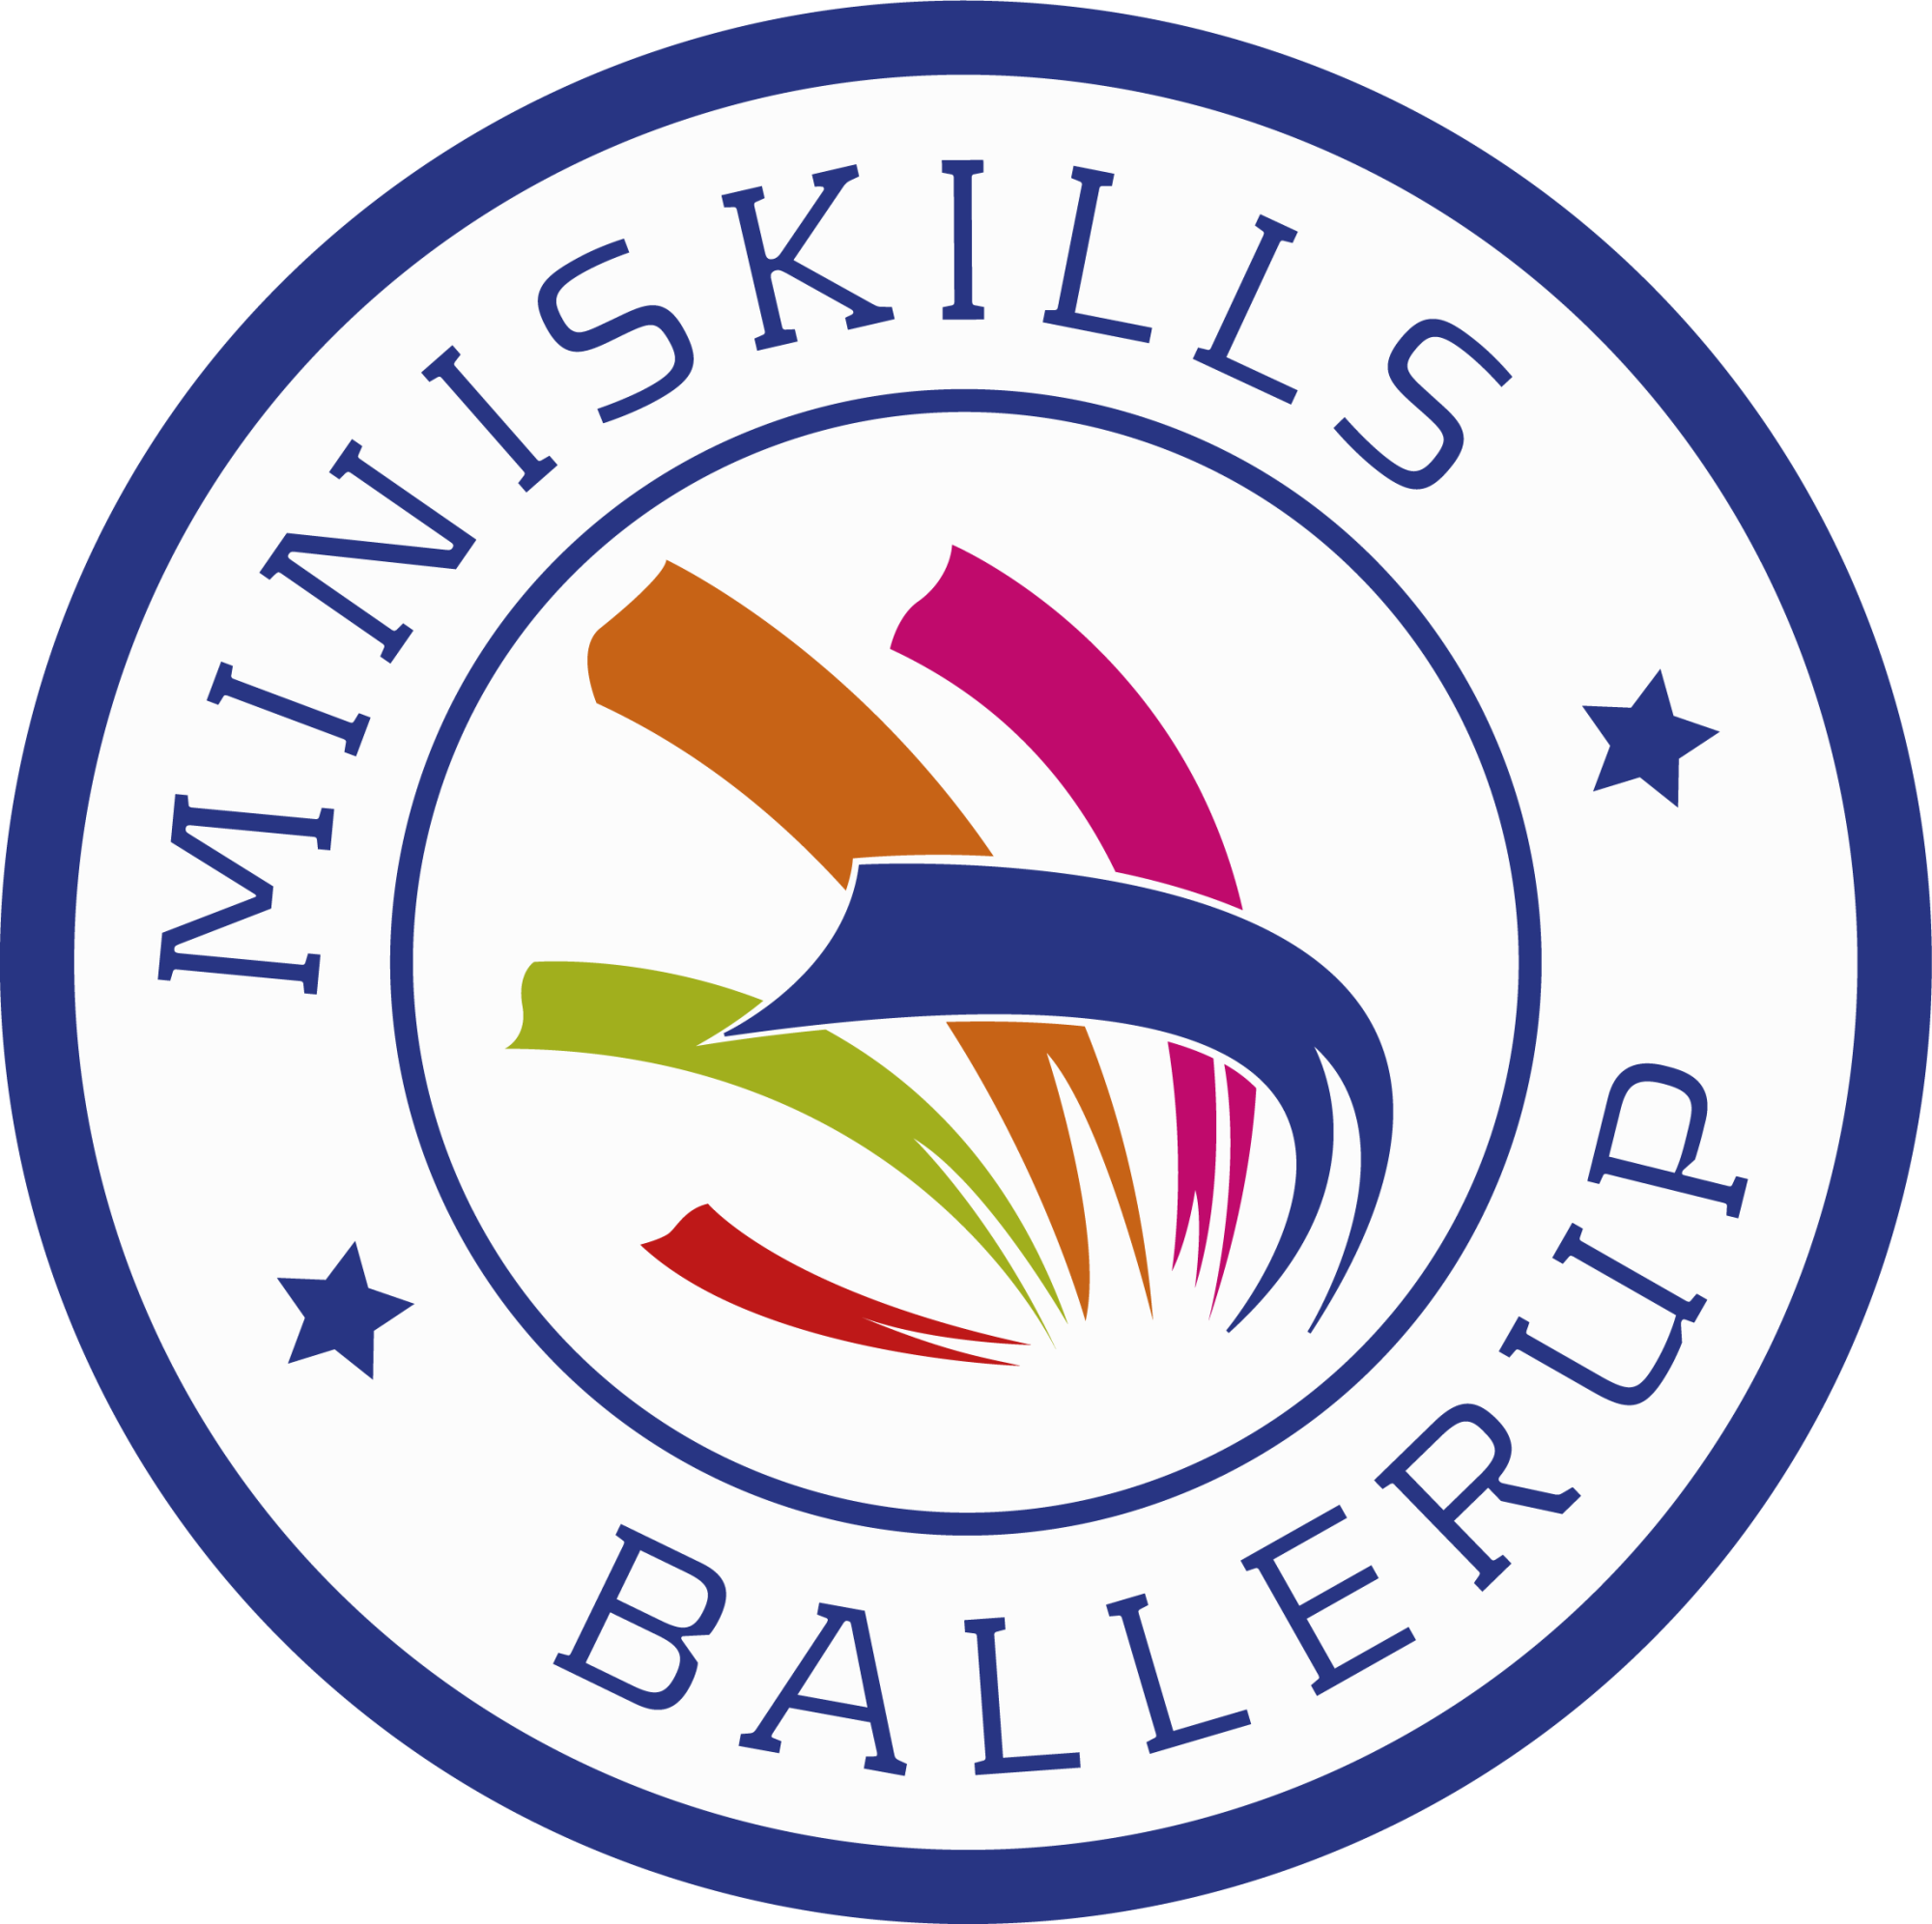 Mini Skills Ballerup